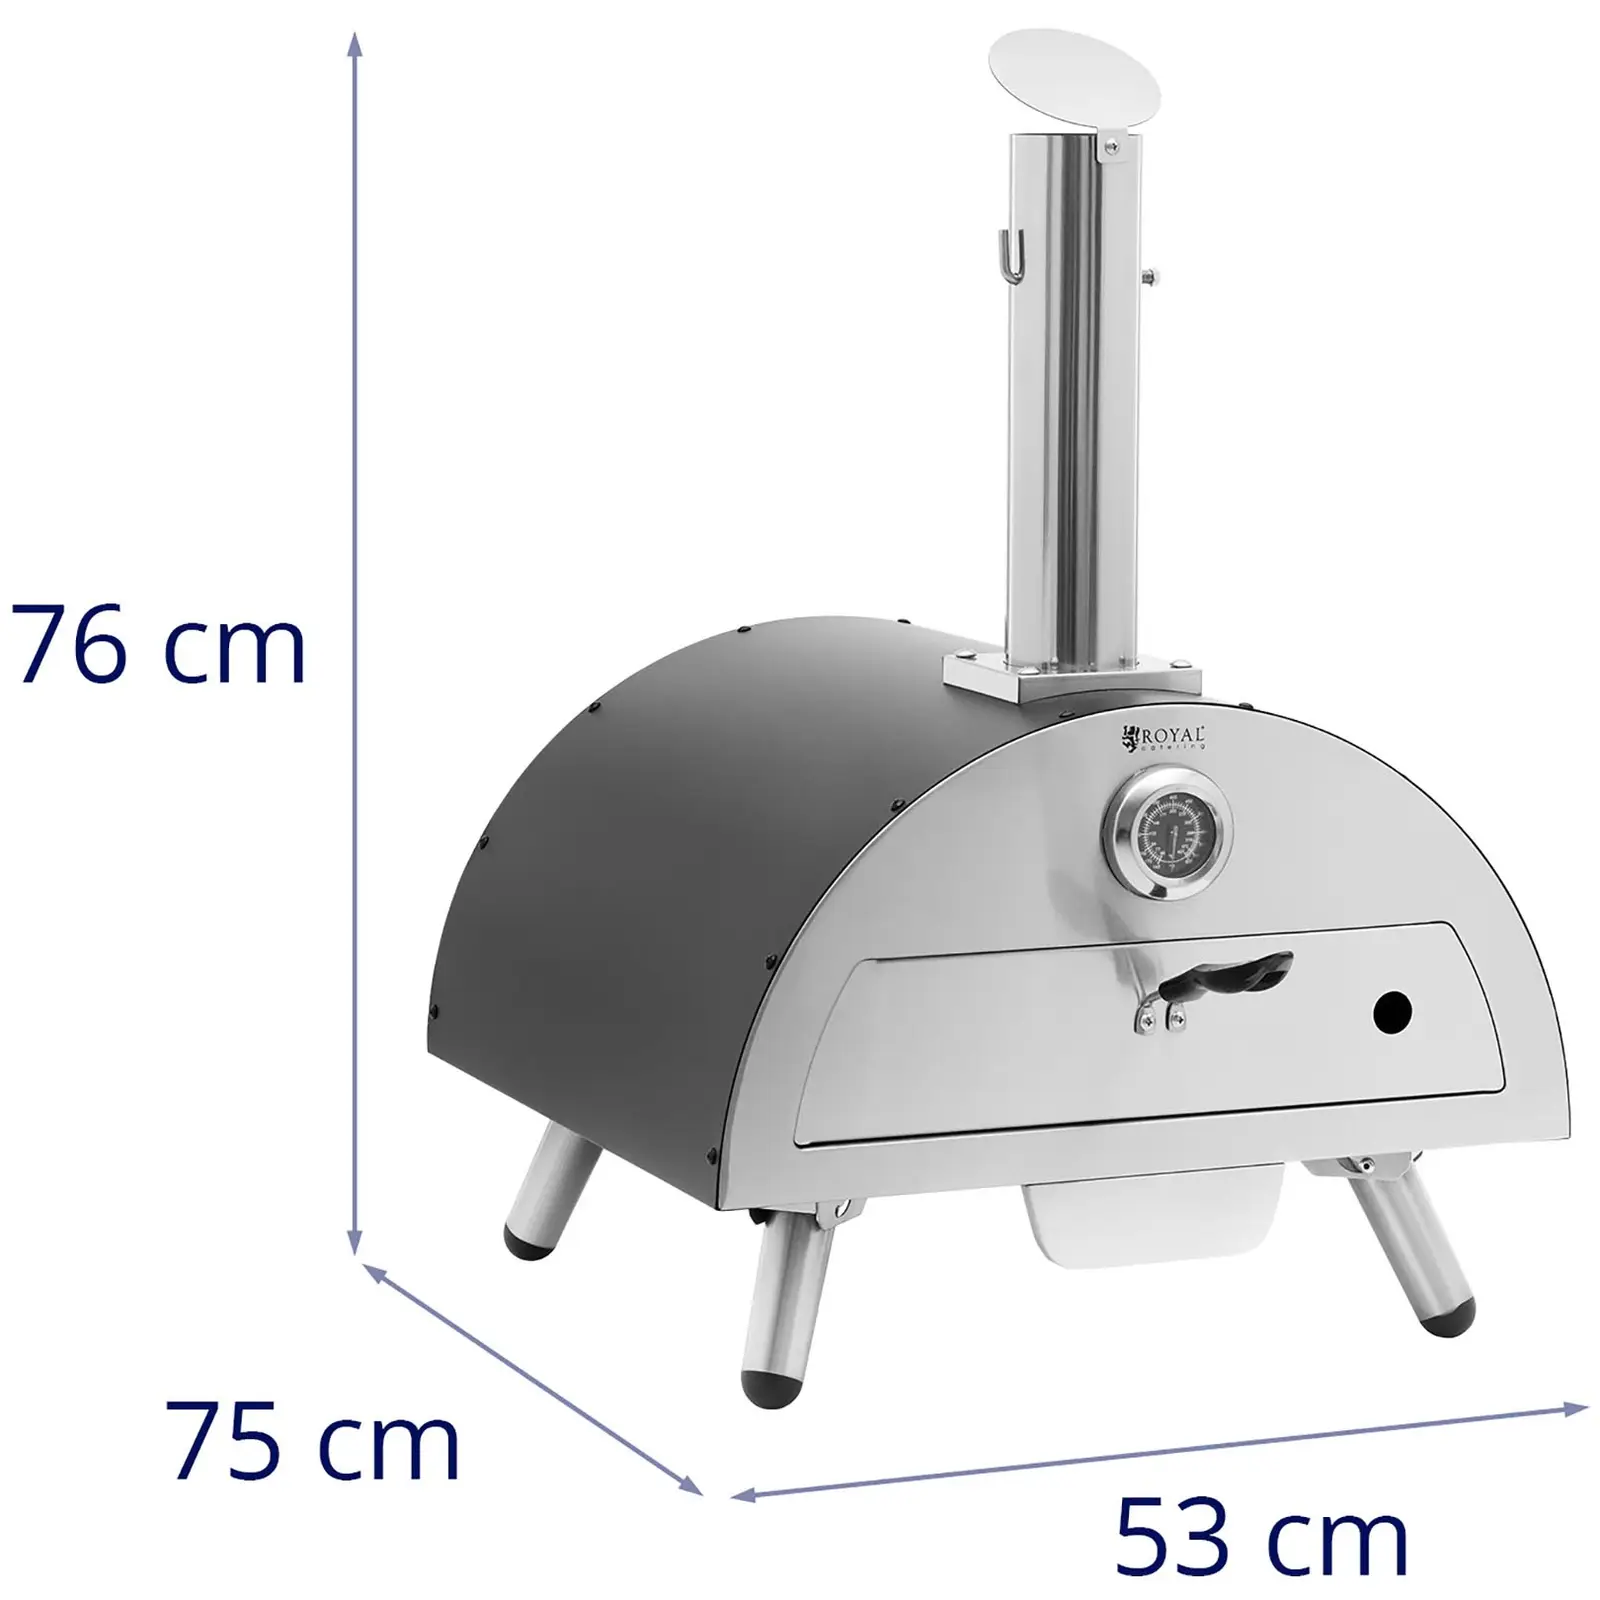 Holz-Pizzaofen - Cordierit - 190 °C - Ø 33 cm - Royal Catering